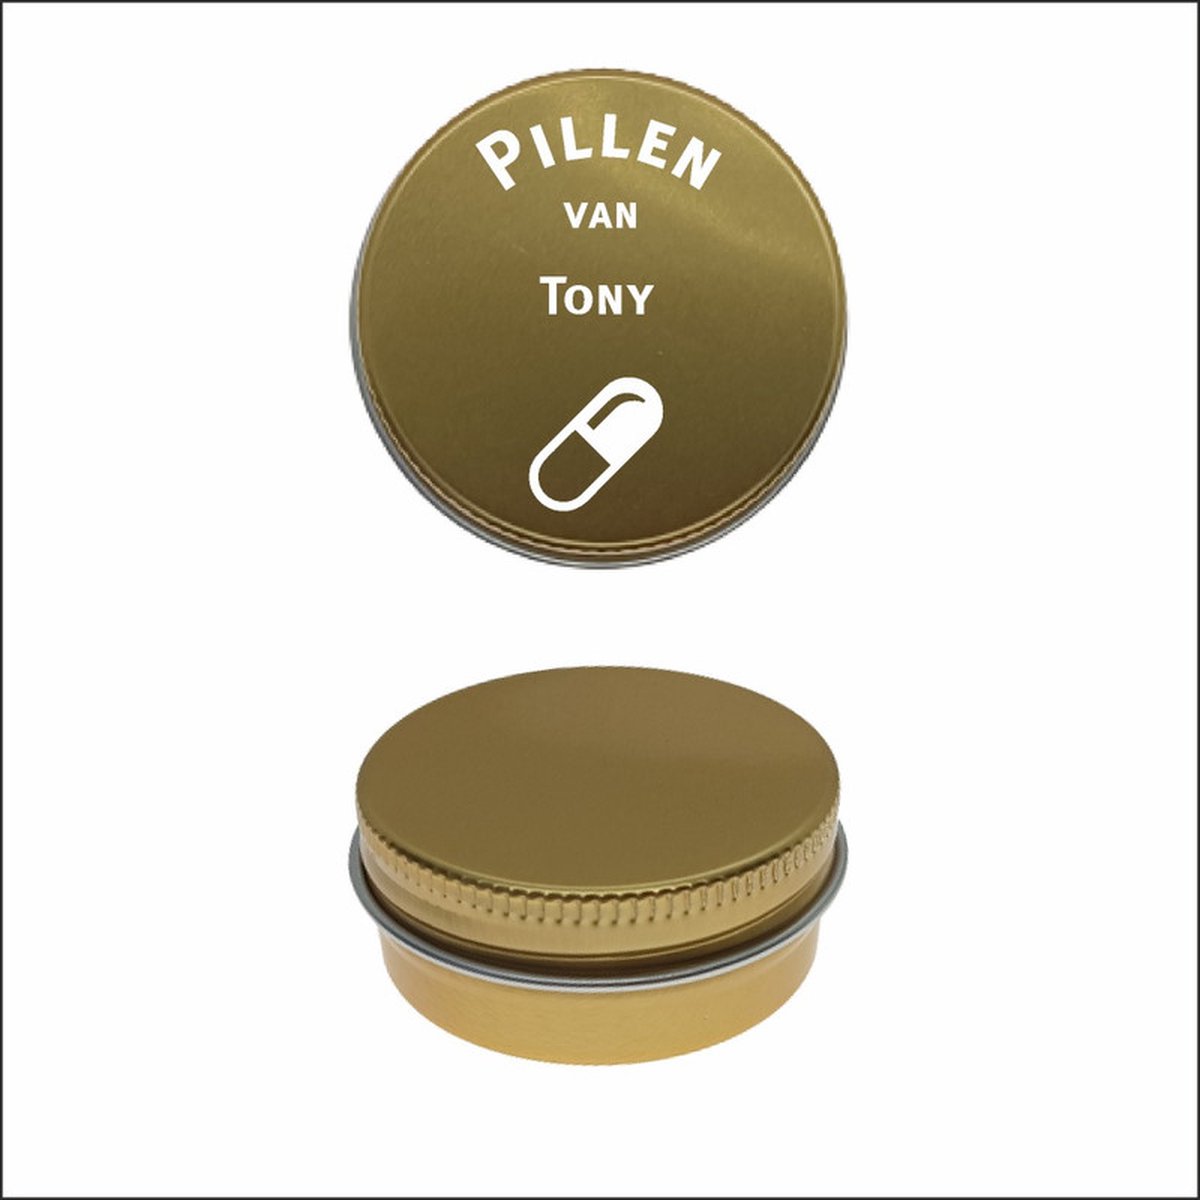 Pillen Blikje Met Naam Gravering - Tony